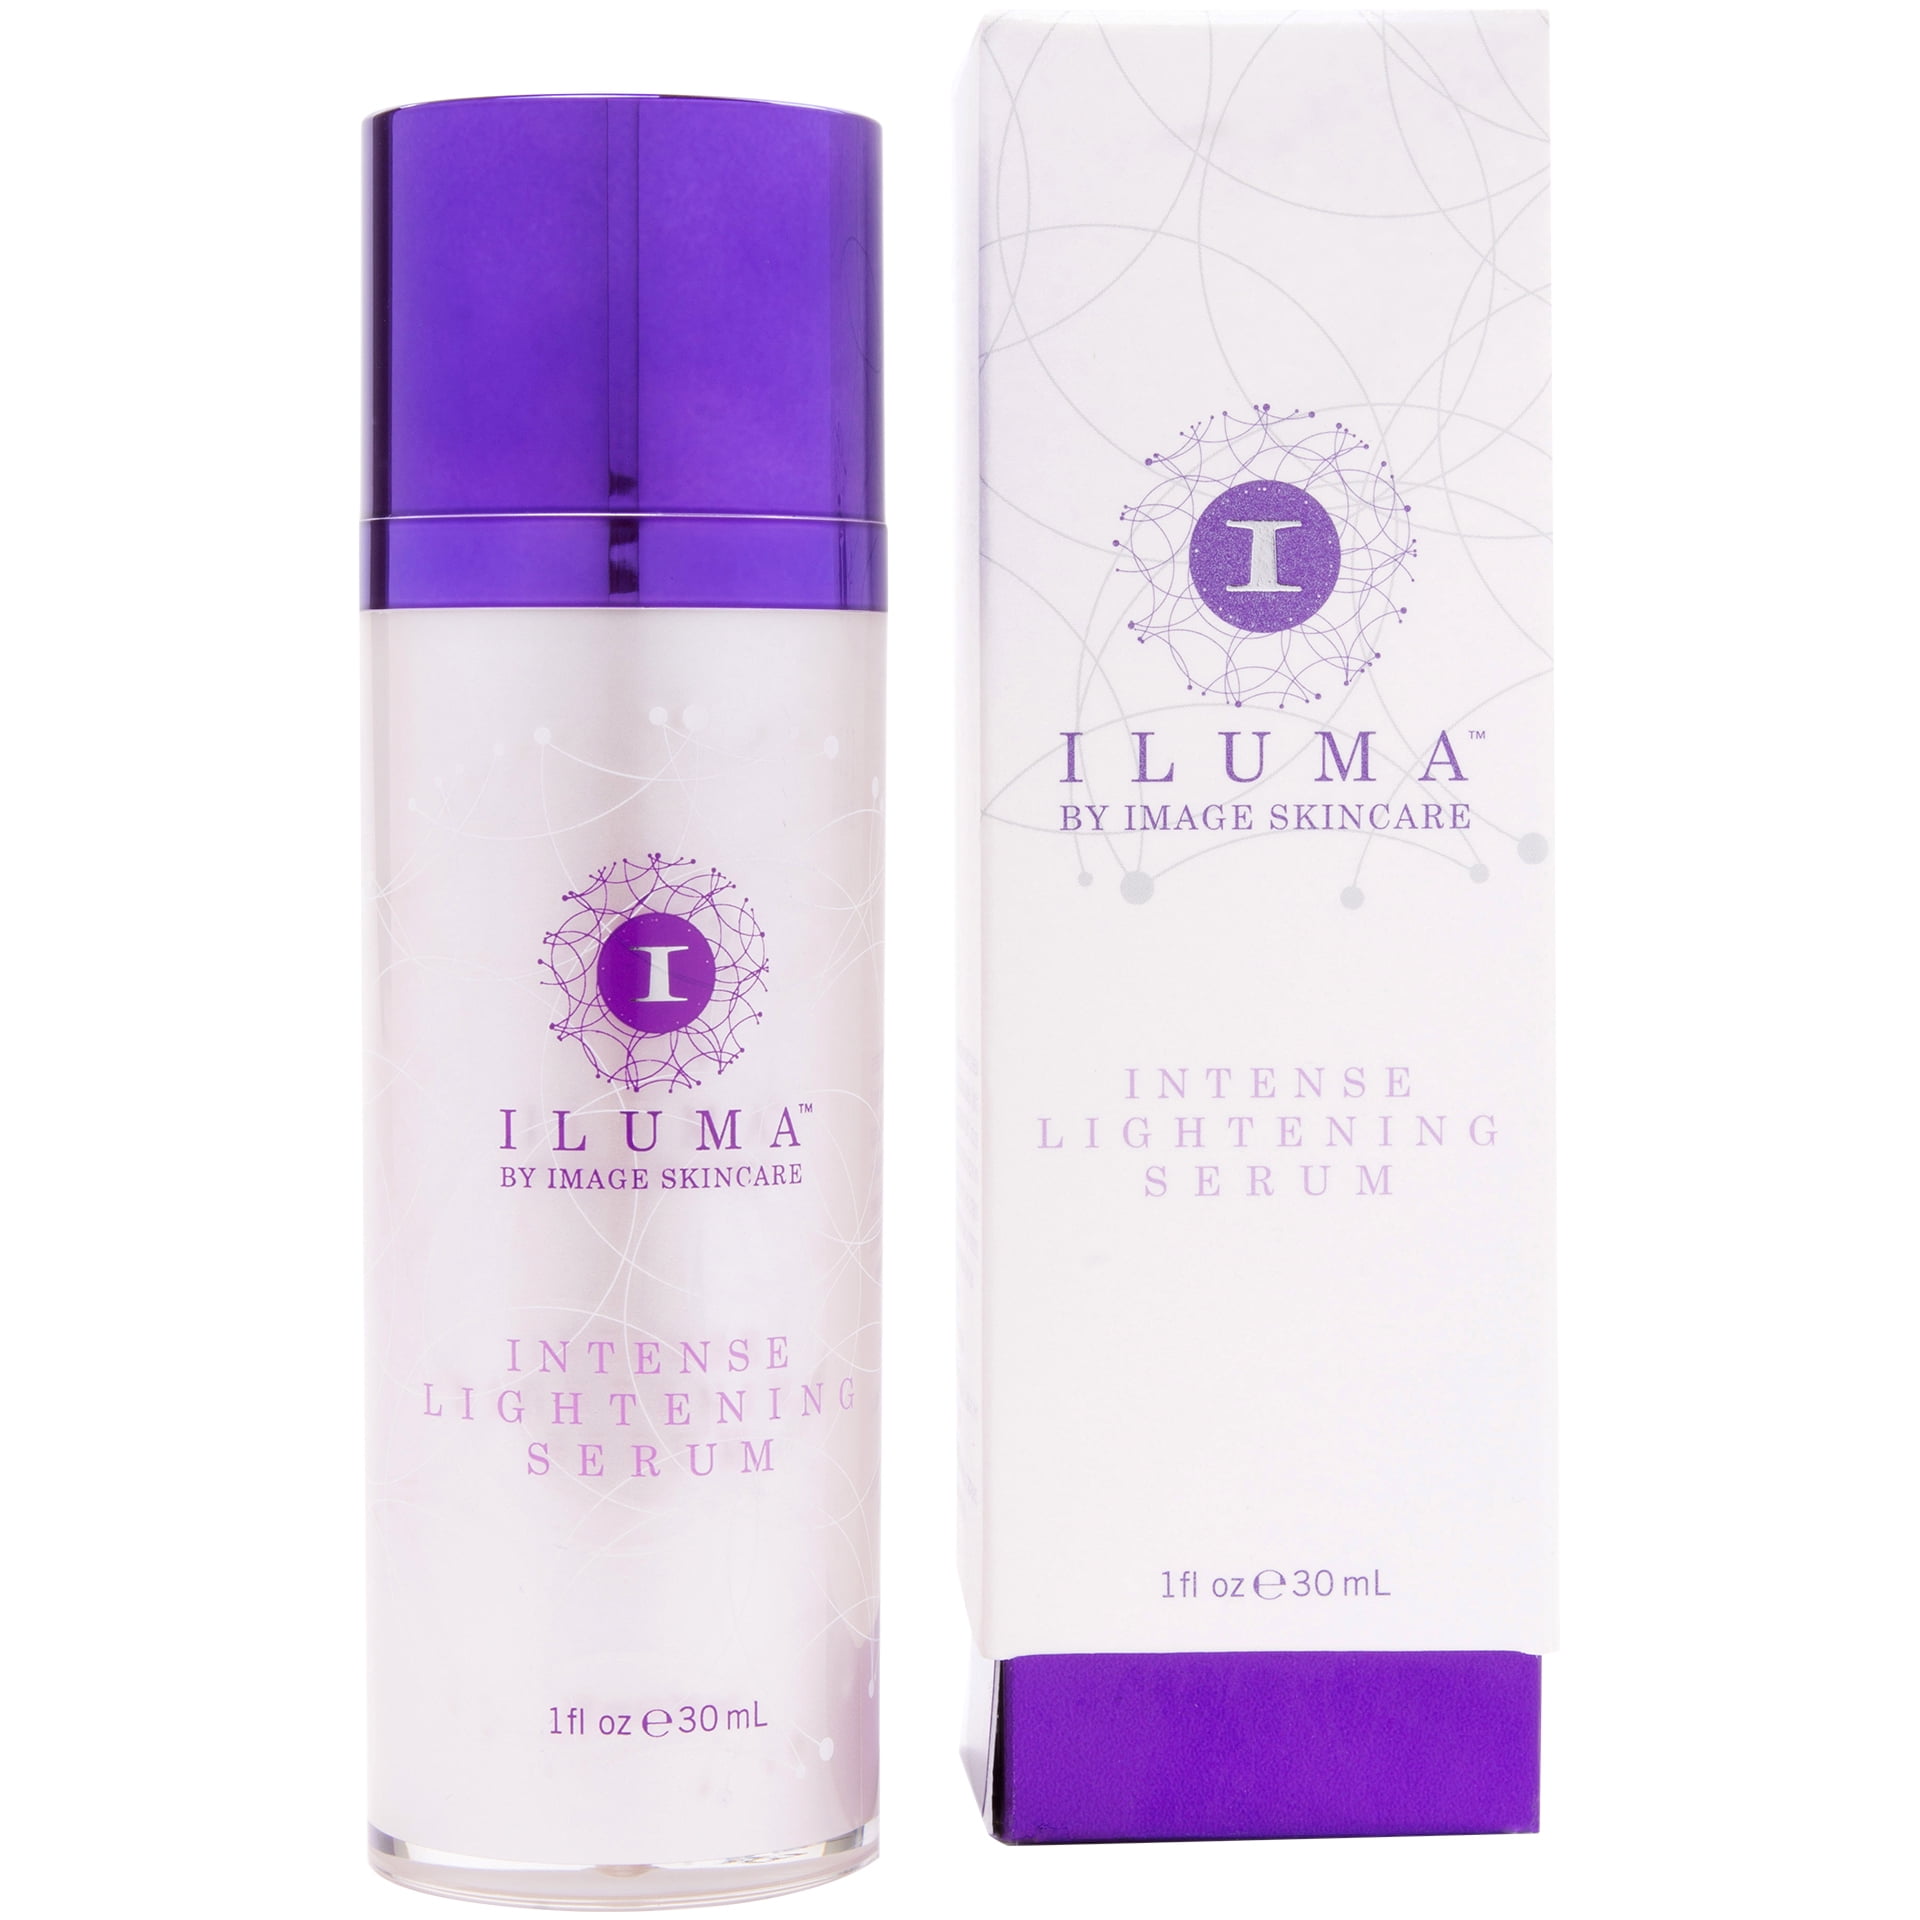 ILUMA intense bleaching serum 1 oz | cupofspa